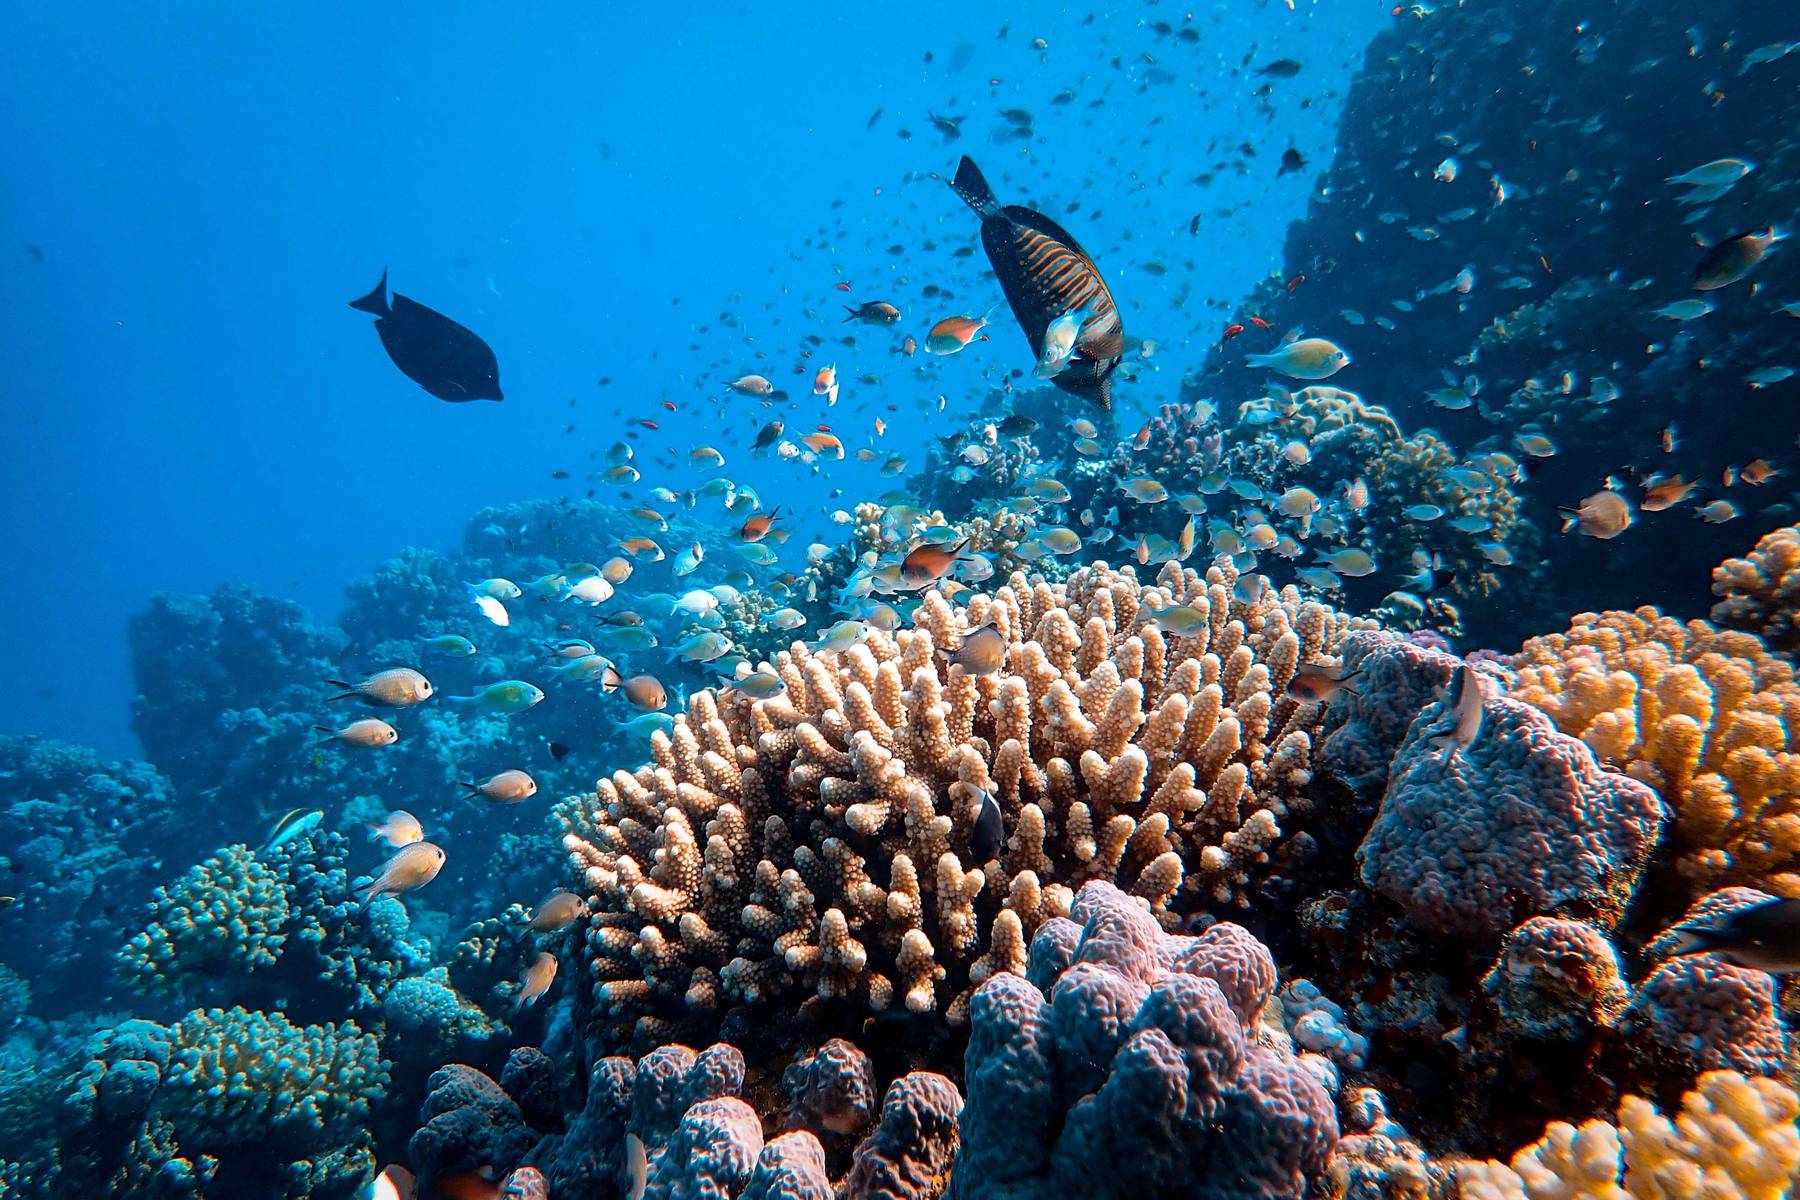 Fantastisk snorkling vid korallrev i Röda havet